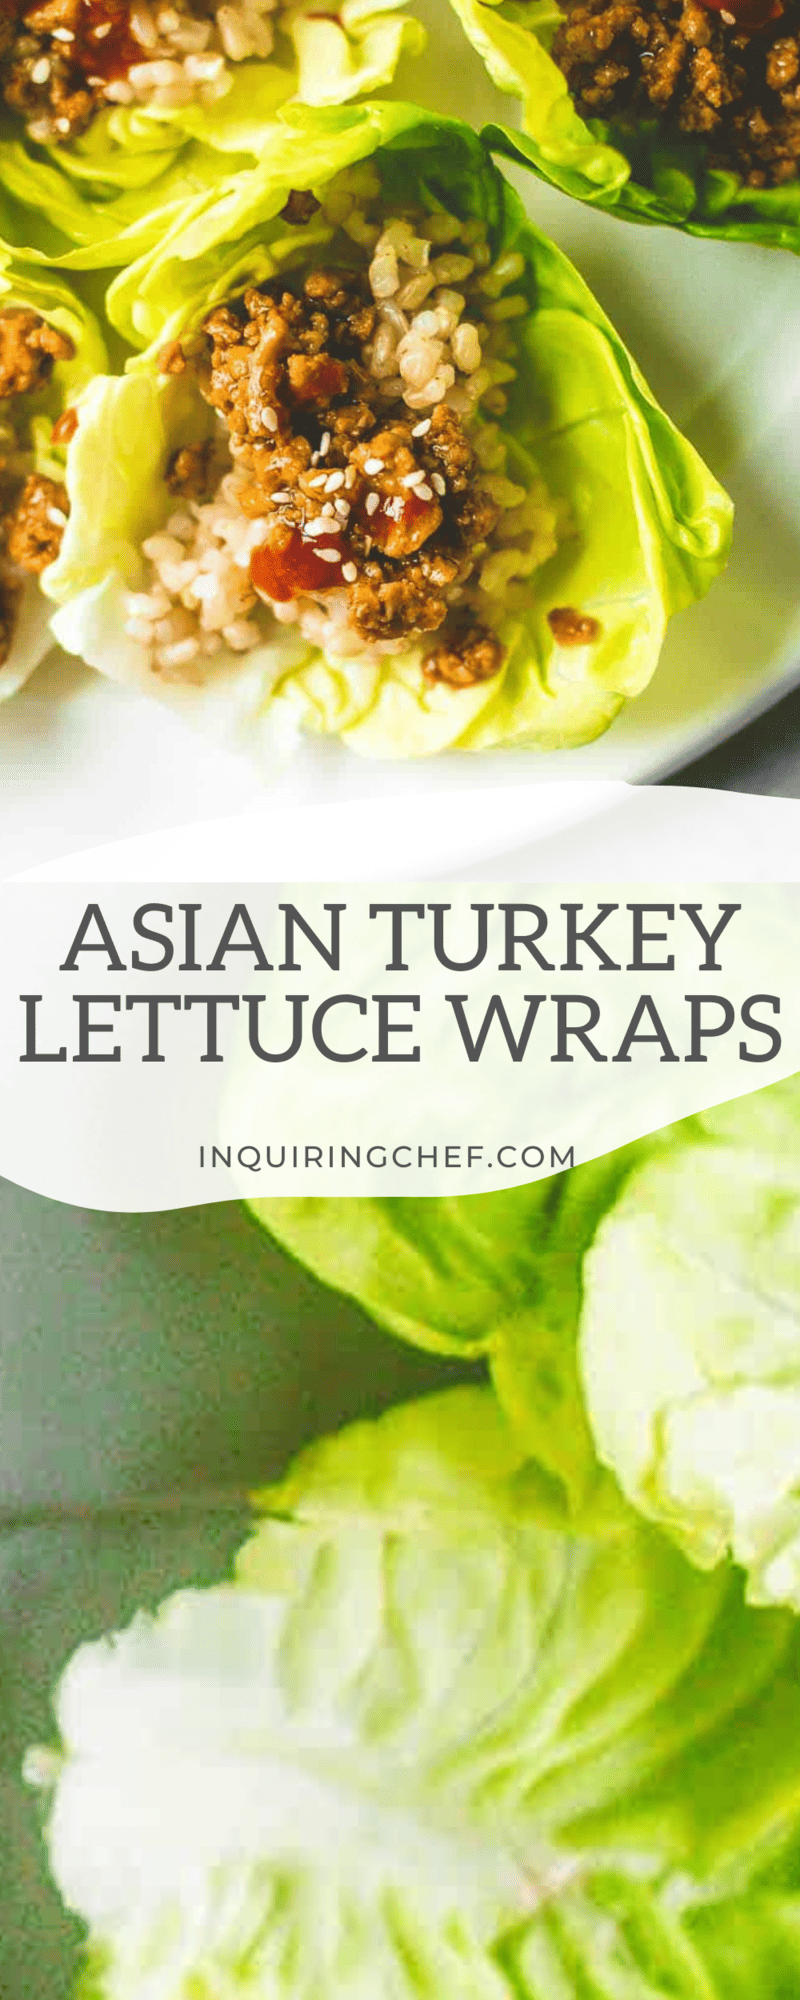 asian turkey lettuce wraps